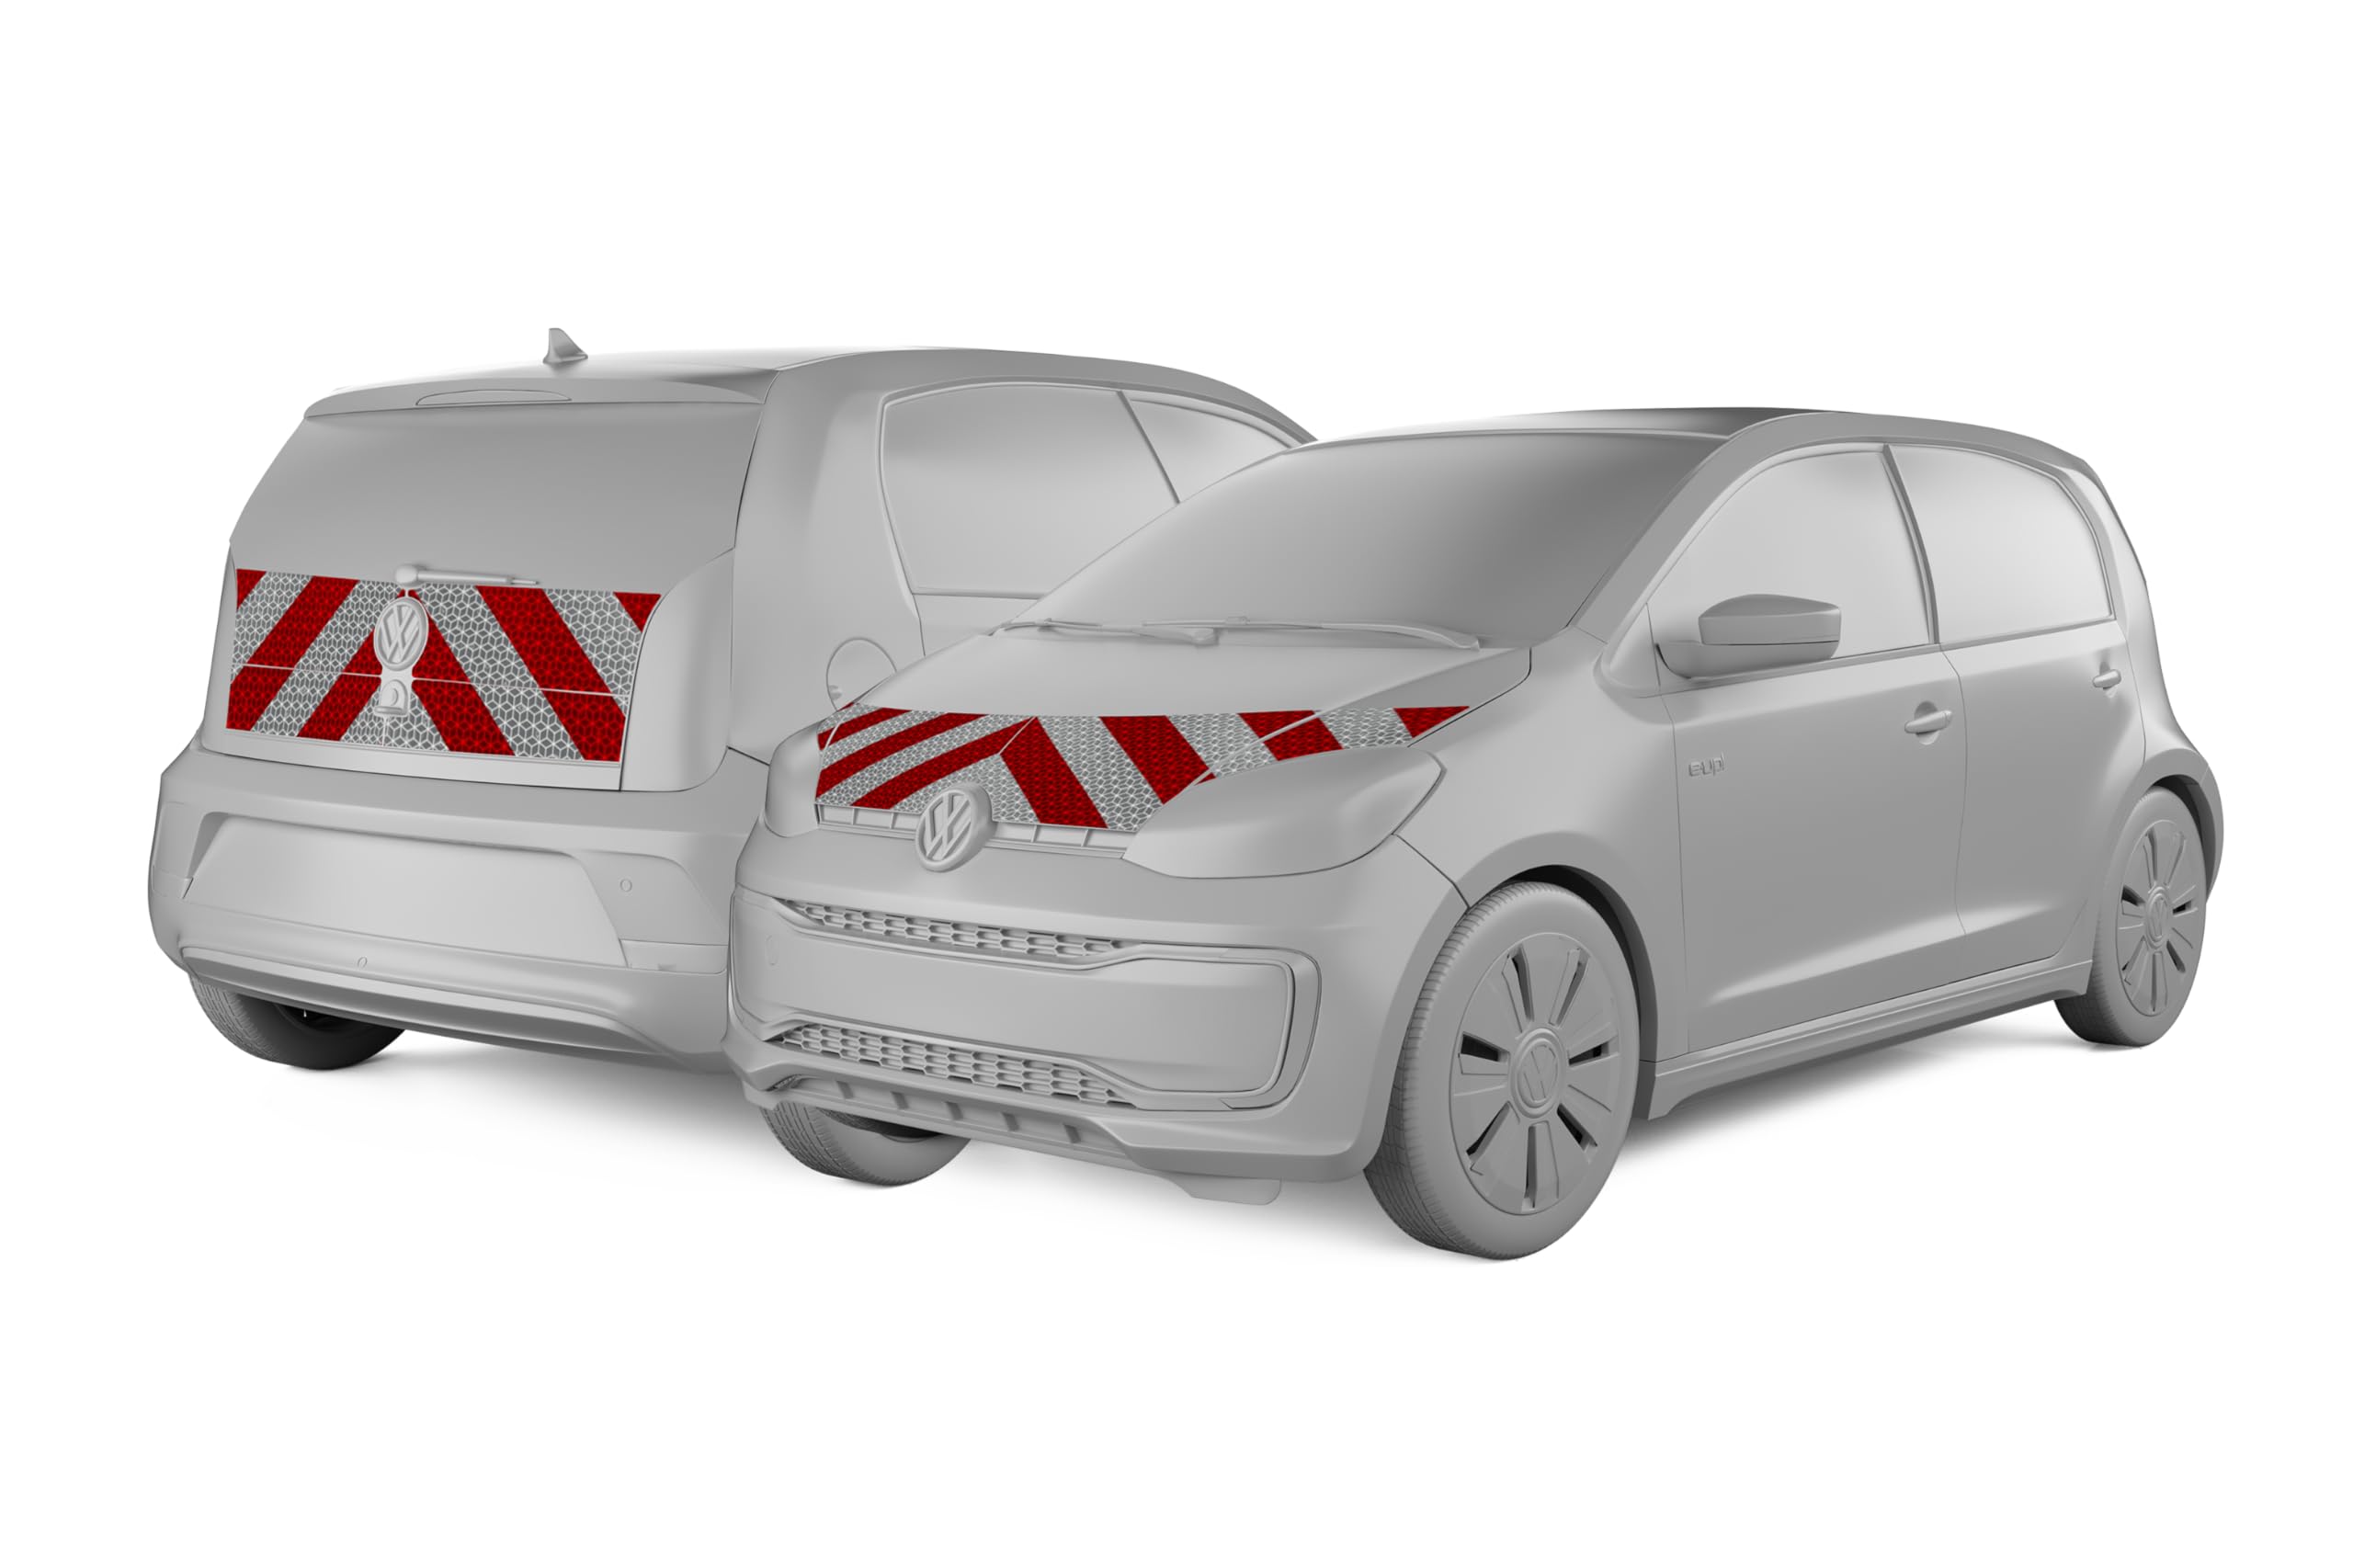 reflecto Kfz-Warnmarkierung passgenau für VW UP 5-Türer Baujahr ab 2016 - rot-weiß, selbstklebend - aus Orafol ORALITE 5921M Reflexfolie - gemäß DIN 30710 (Front und Heck)